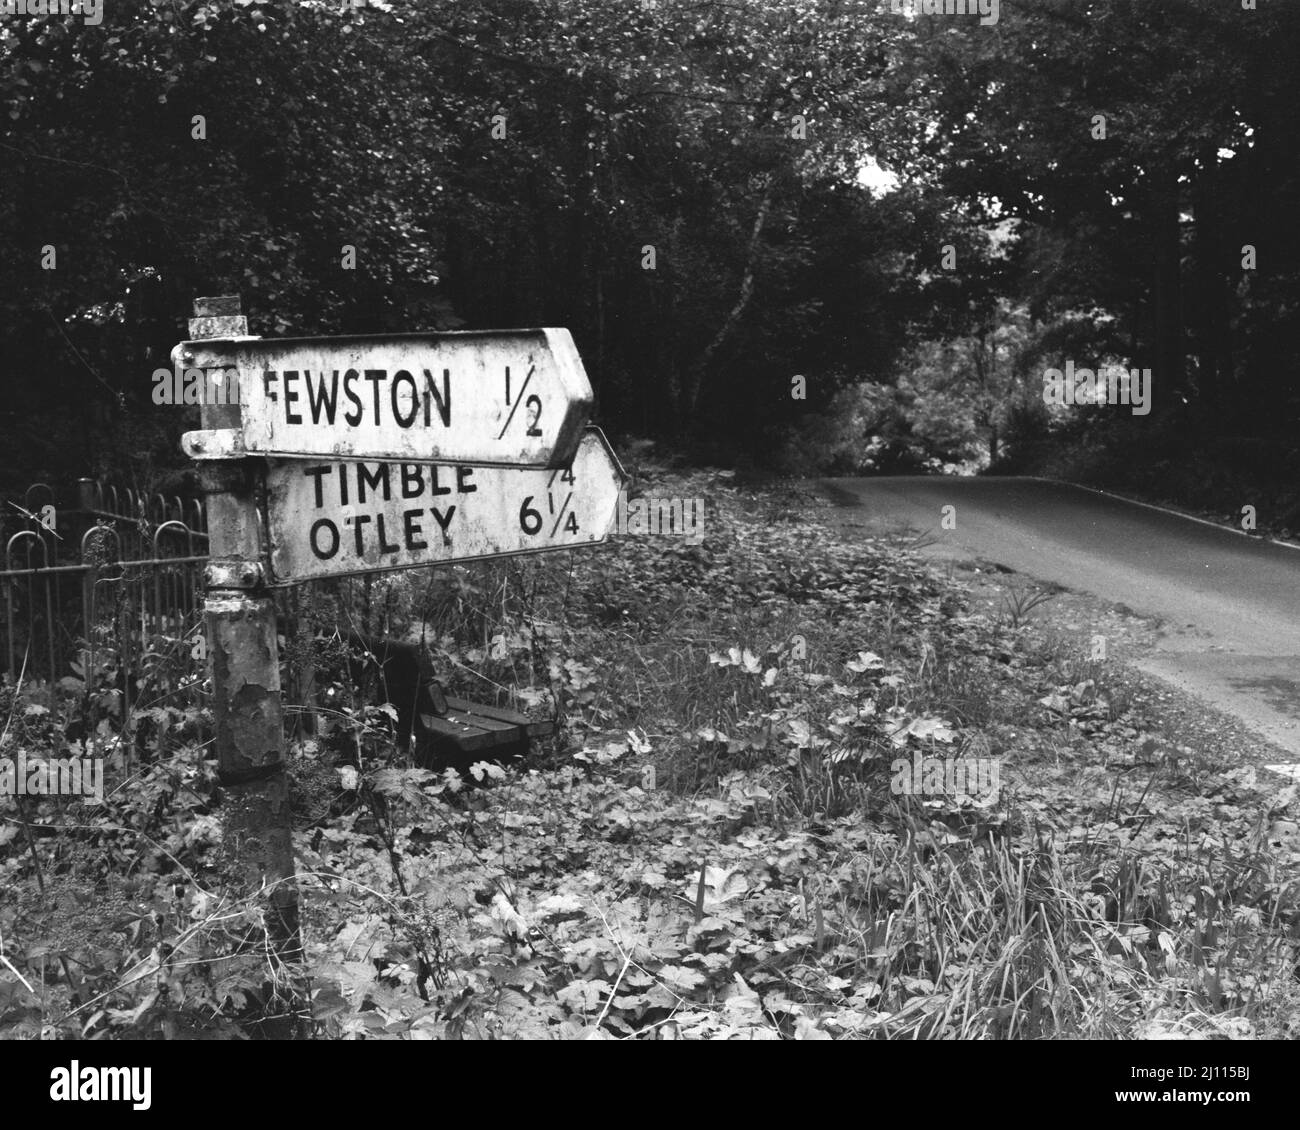 Photo en noir et blanc d'un panneau de signalisation portant les noms de rue « FEWSTON » et « TIMBLE OTLEY » Banque D'Images